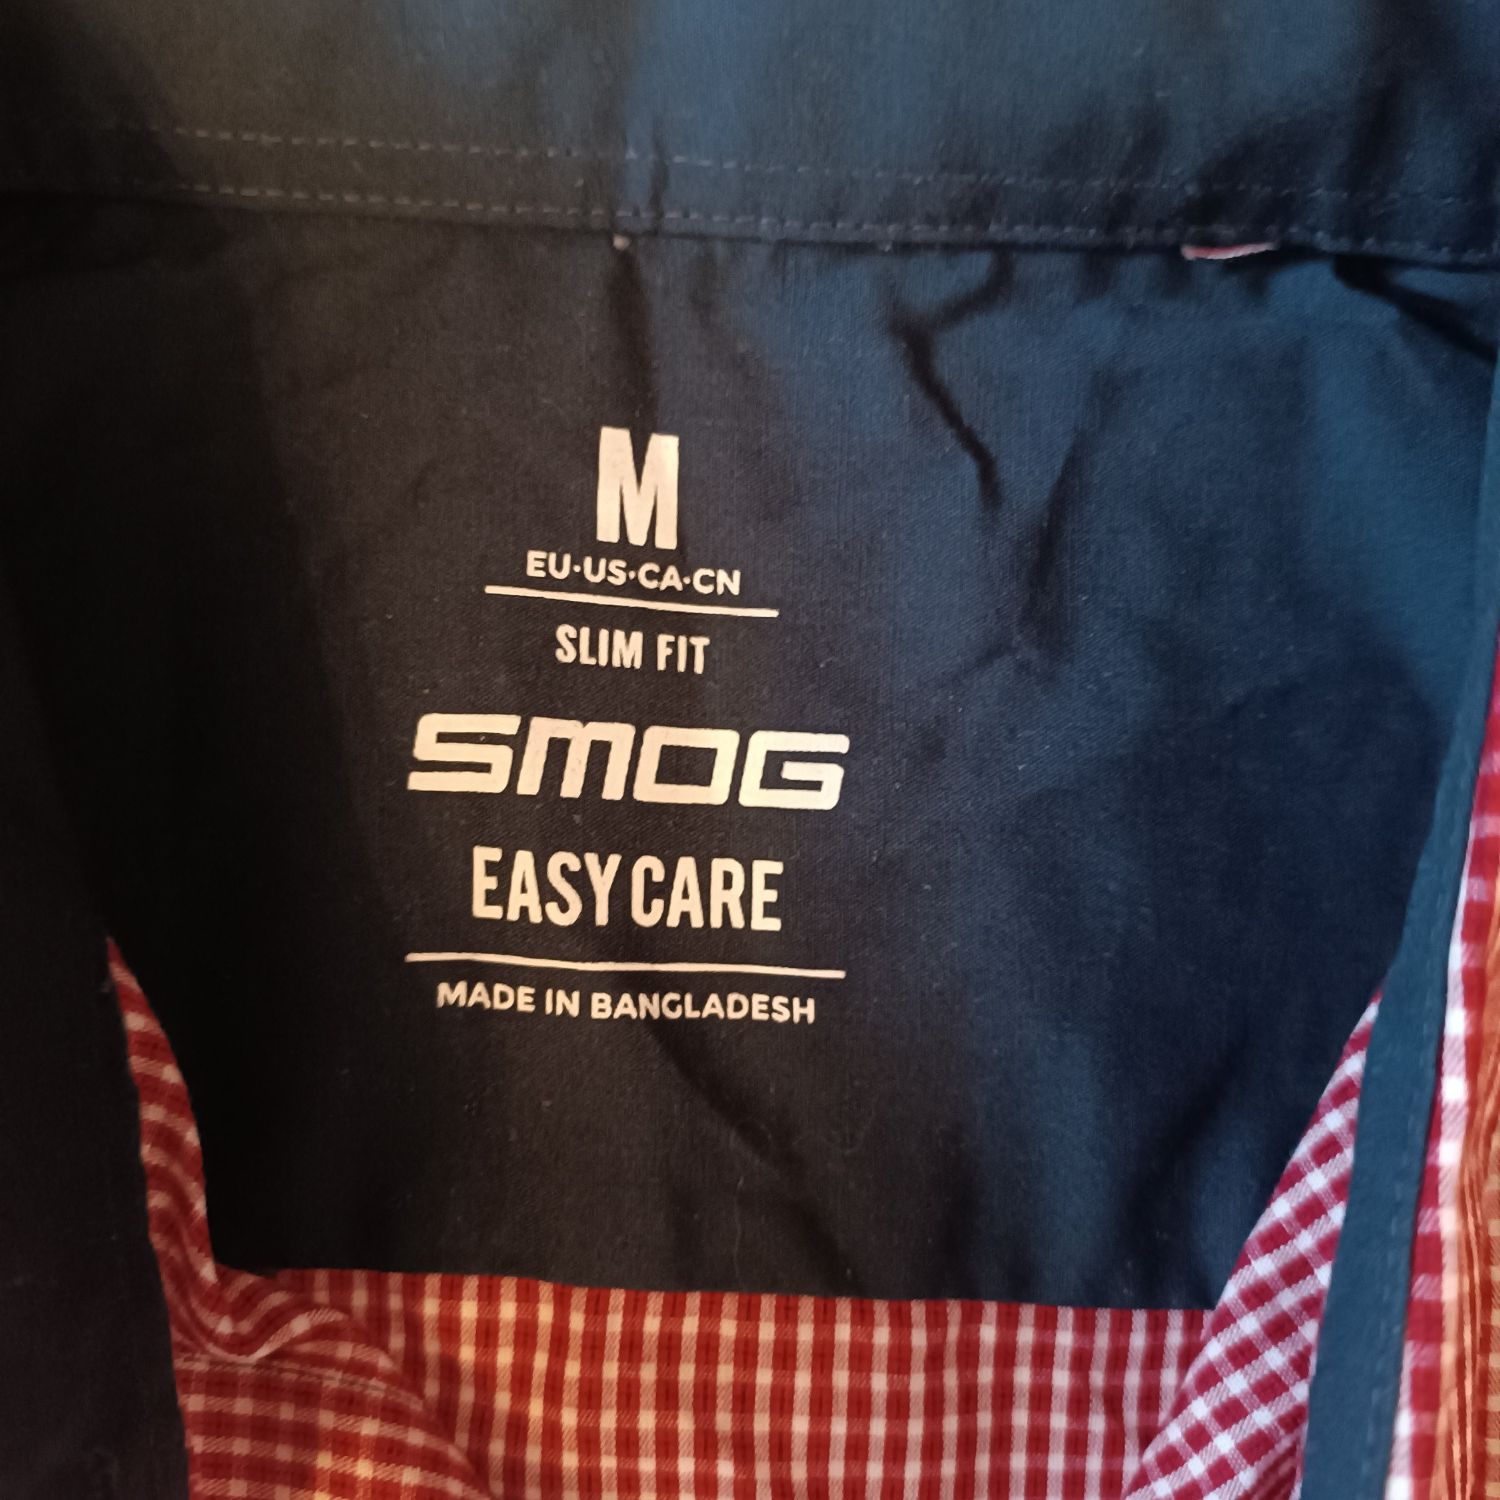 Мъжка риза Smog, Slim fit, M размер